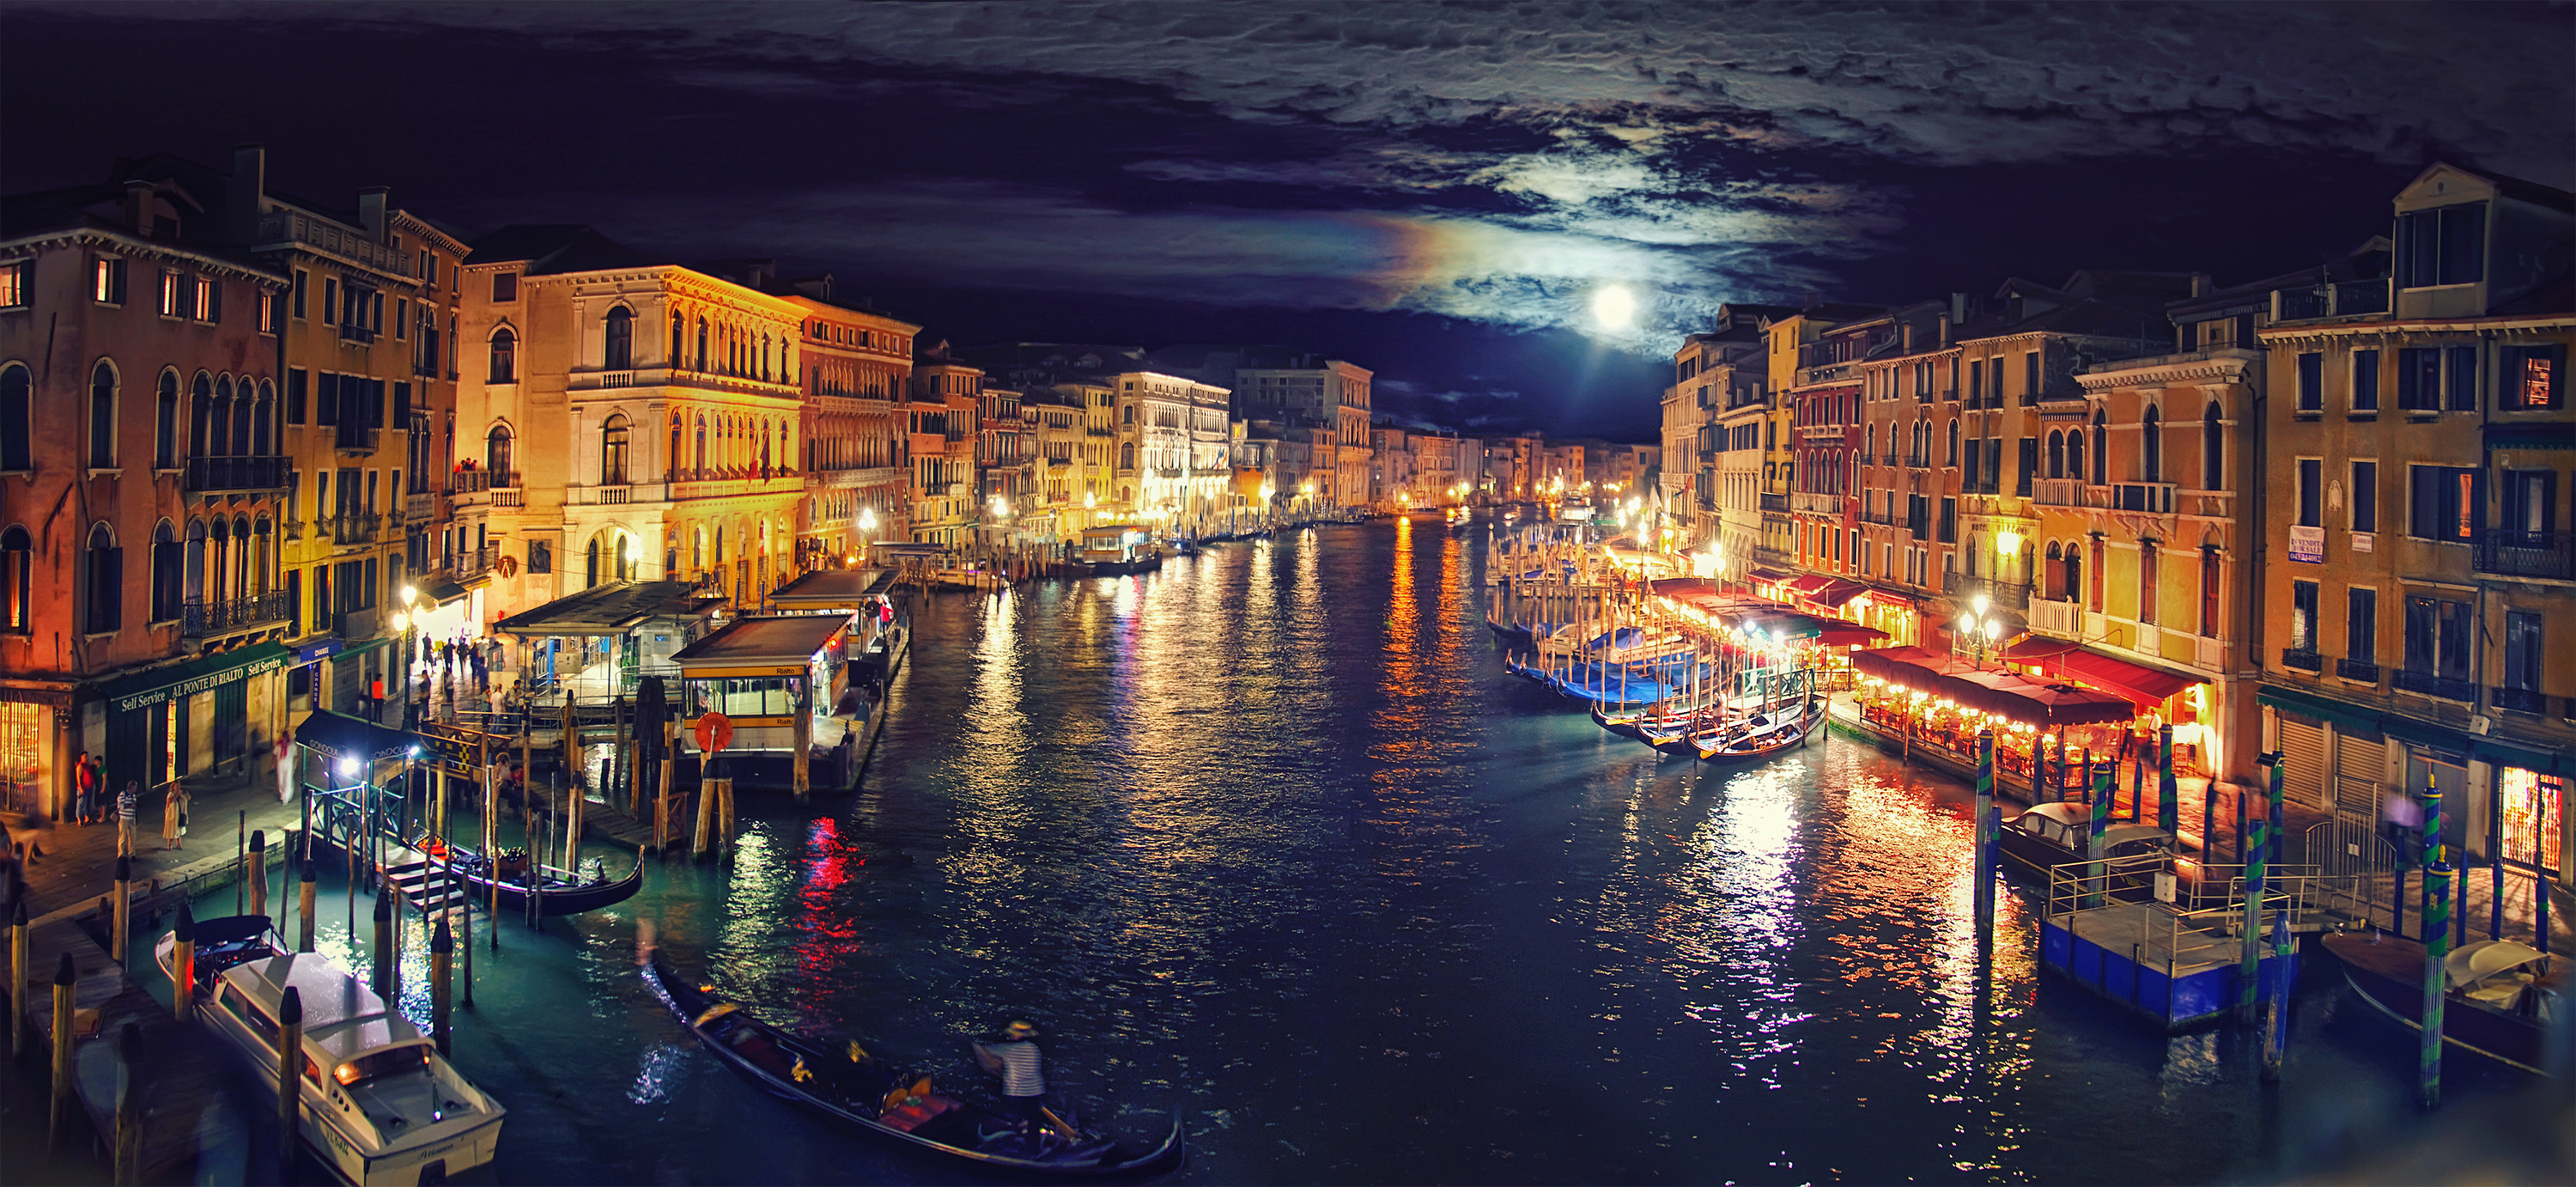 Có phải bạn muốn có một bức hình nền đẹp và lãng mạn cho máy tính của mình? Hãy tải hình nền đẹp Ý Venice Grand Canal đêm để thưởng thức vẻ đẹp của thành phố lãng mạn này. Những đường kênh sáng lấp lánh và những căn nhà độc đáo sẽ khiến bạn không thể rời mắt khỏi màn hình.